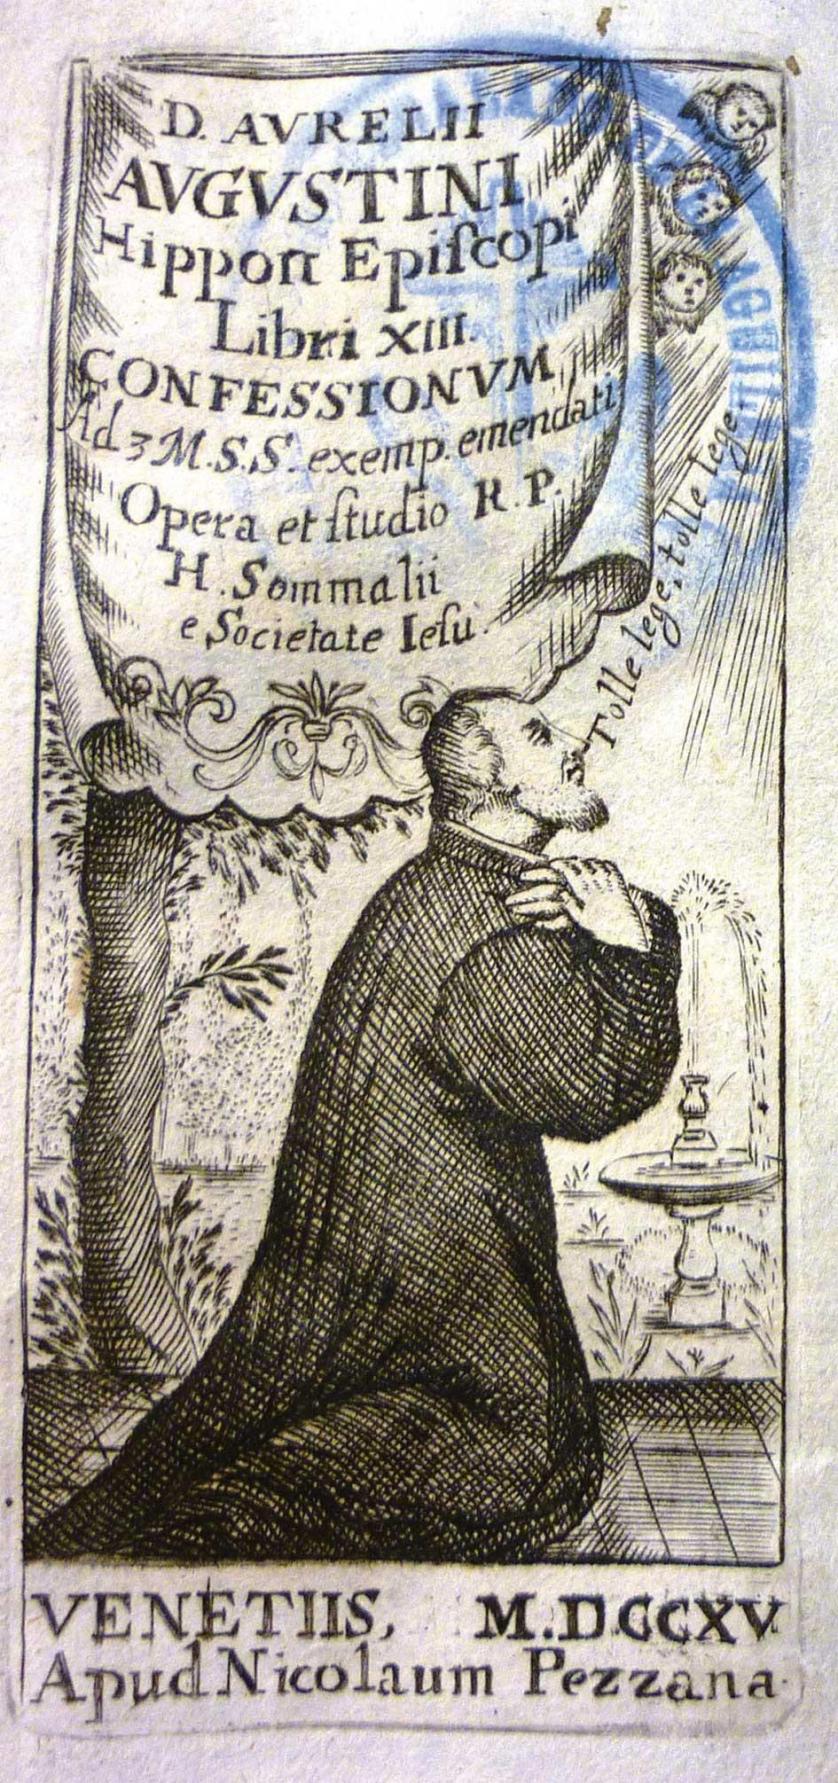 Aurelii Augustini Hipon Episcopi